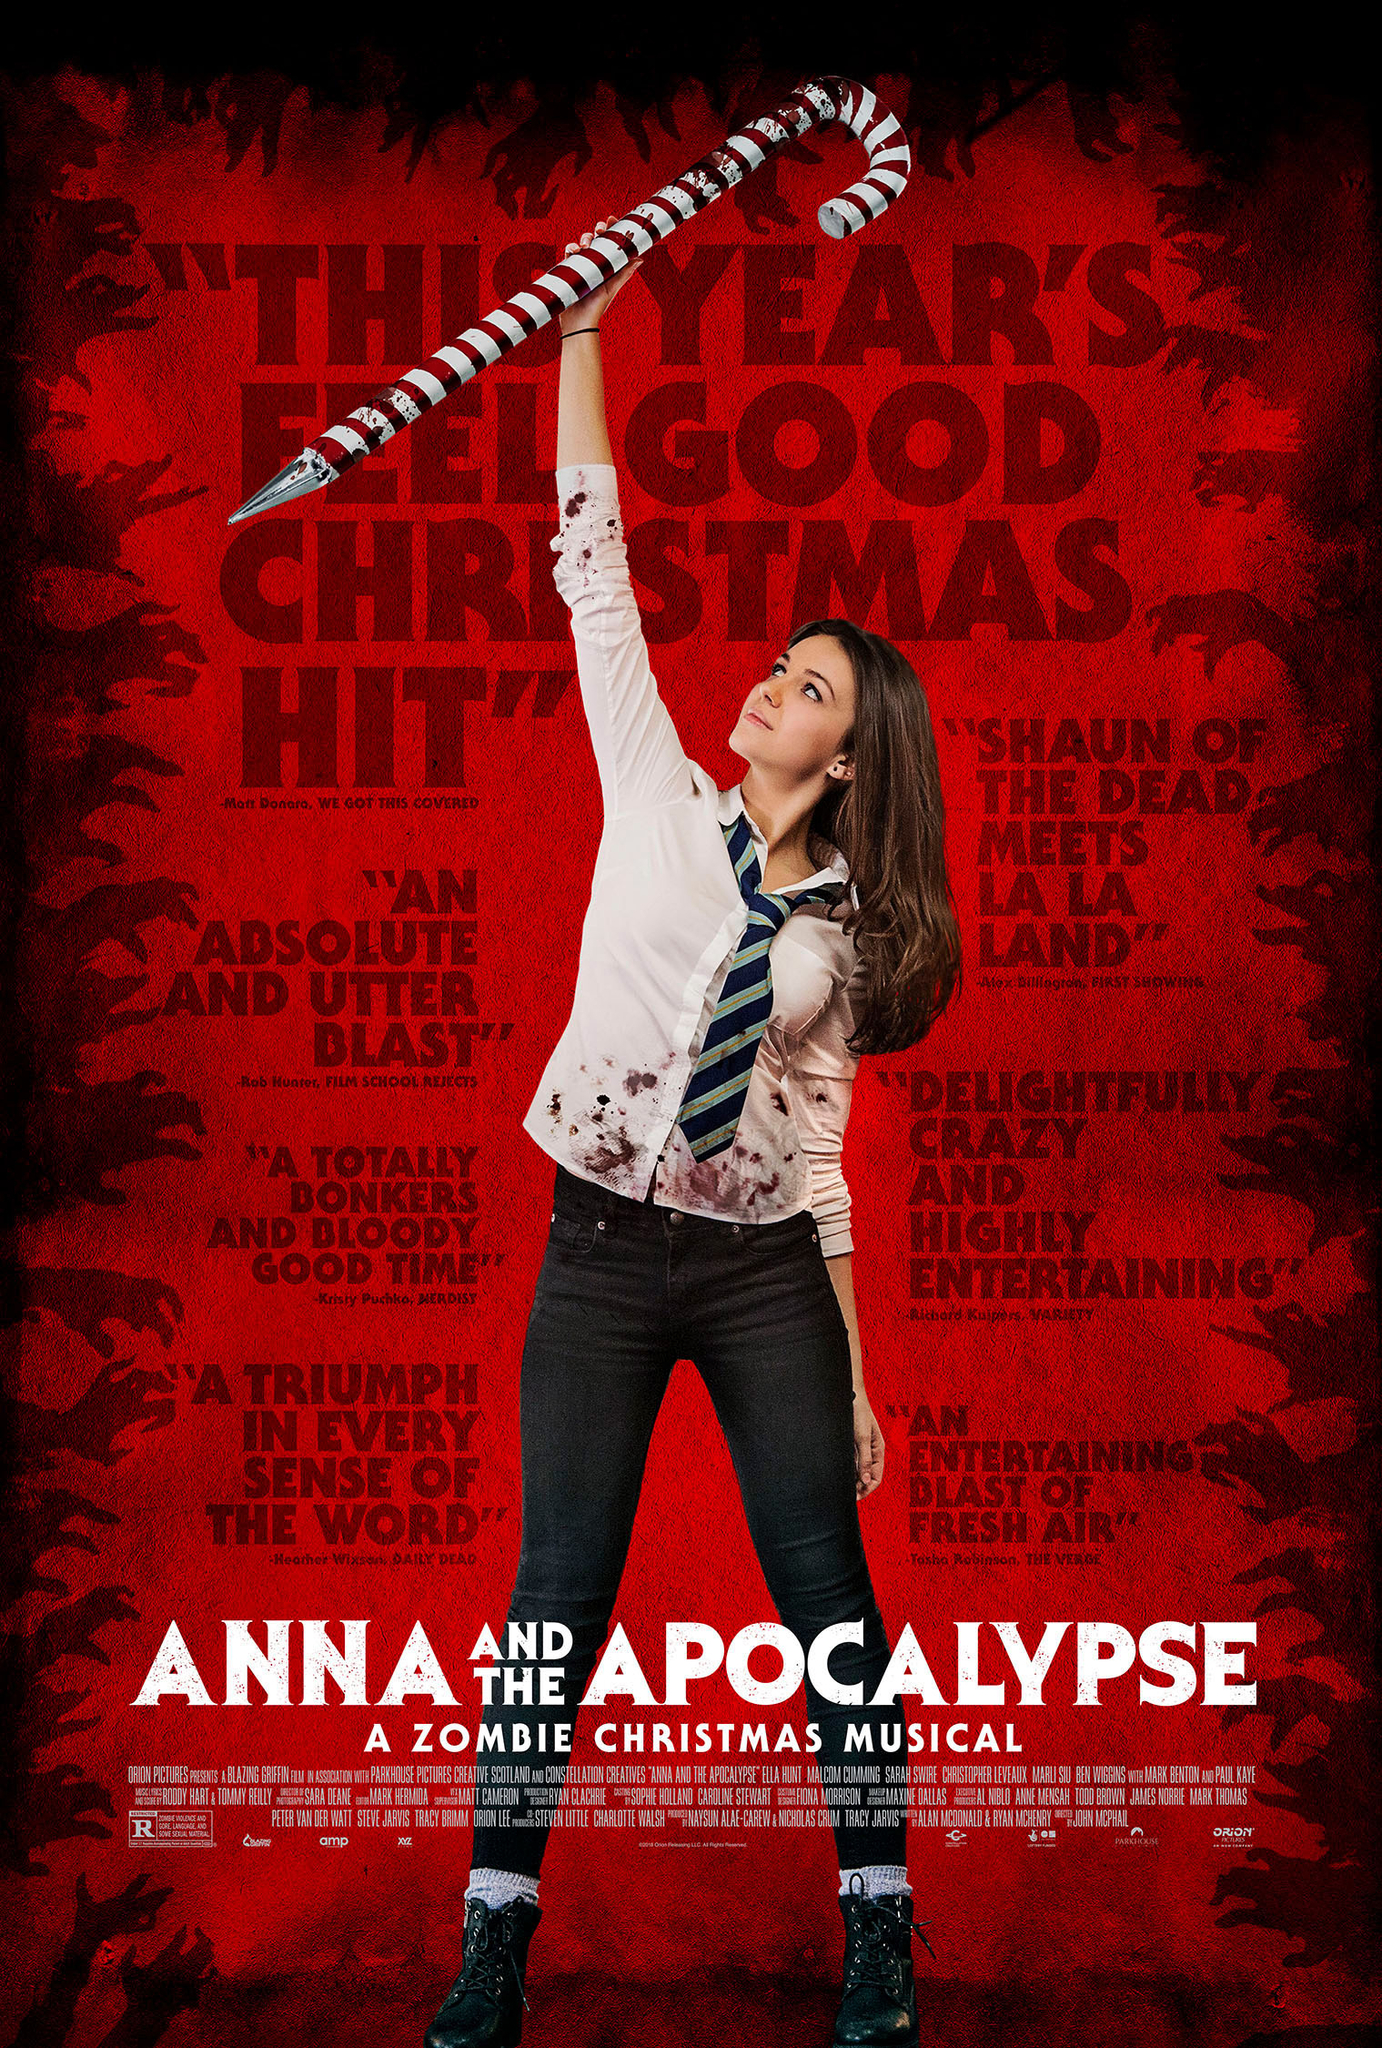 Nonton film Anna and the Apocalypse layarkaca21 indoxx1 ganool online streaming terbaru